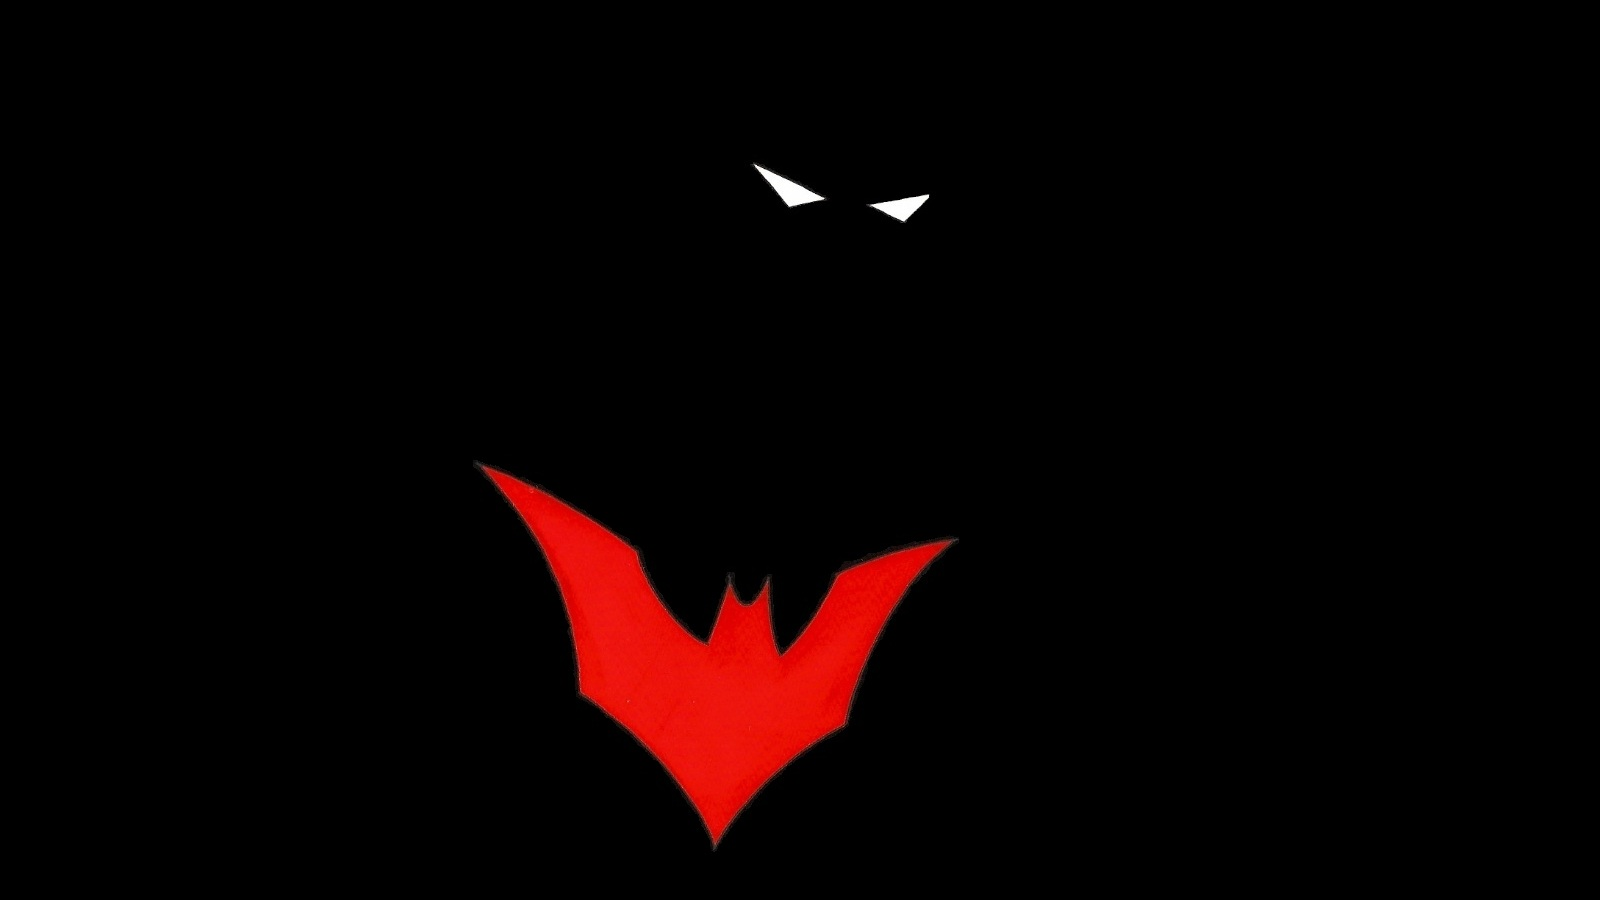 壁紙を超えたバットマン,赤,黒,コウモリ,闇,シンボル